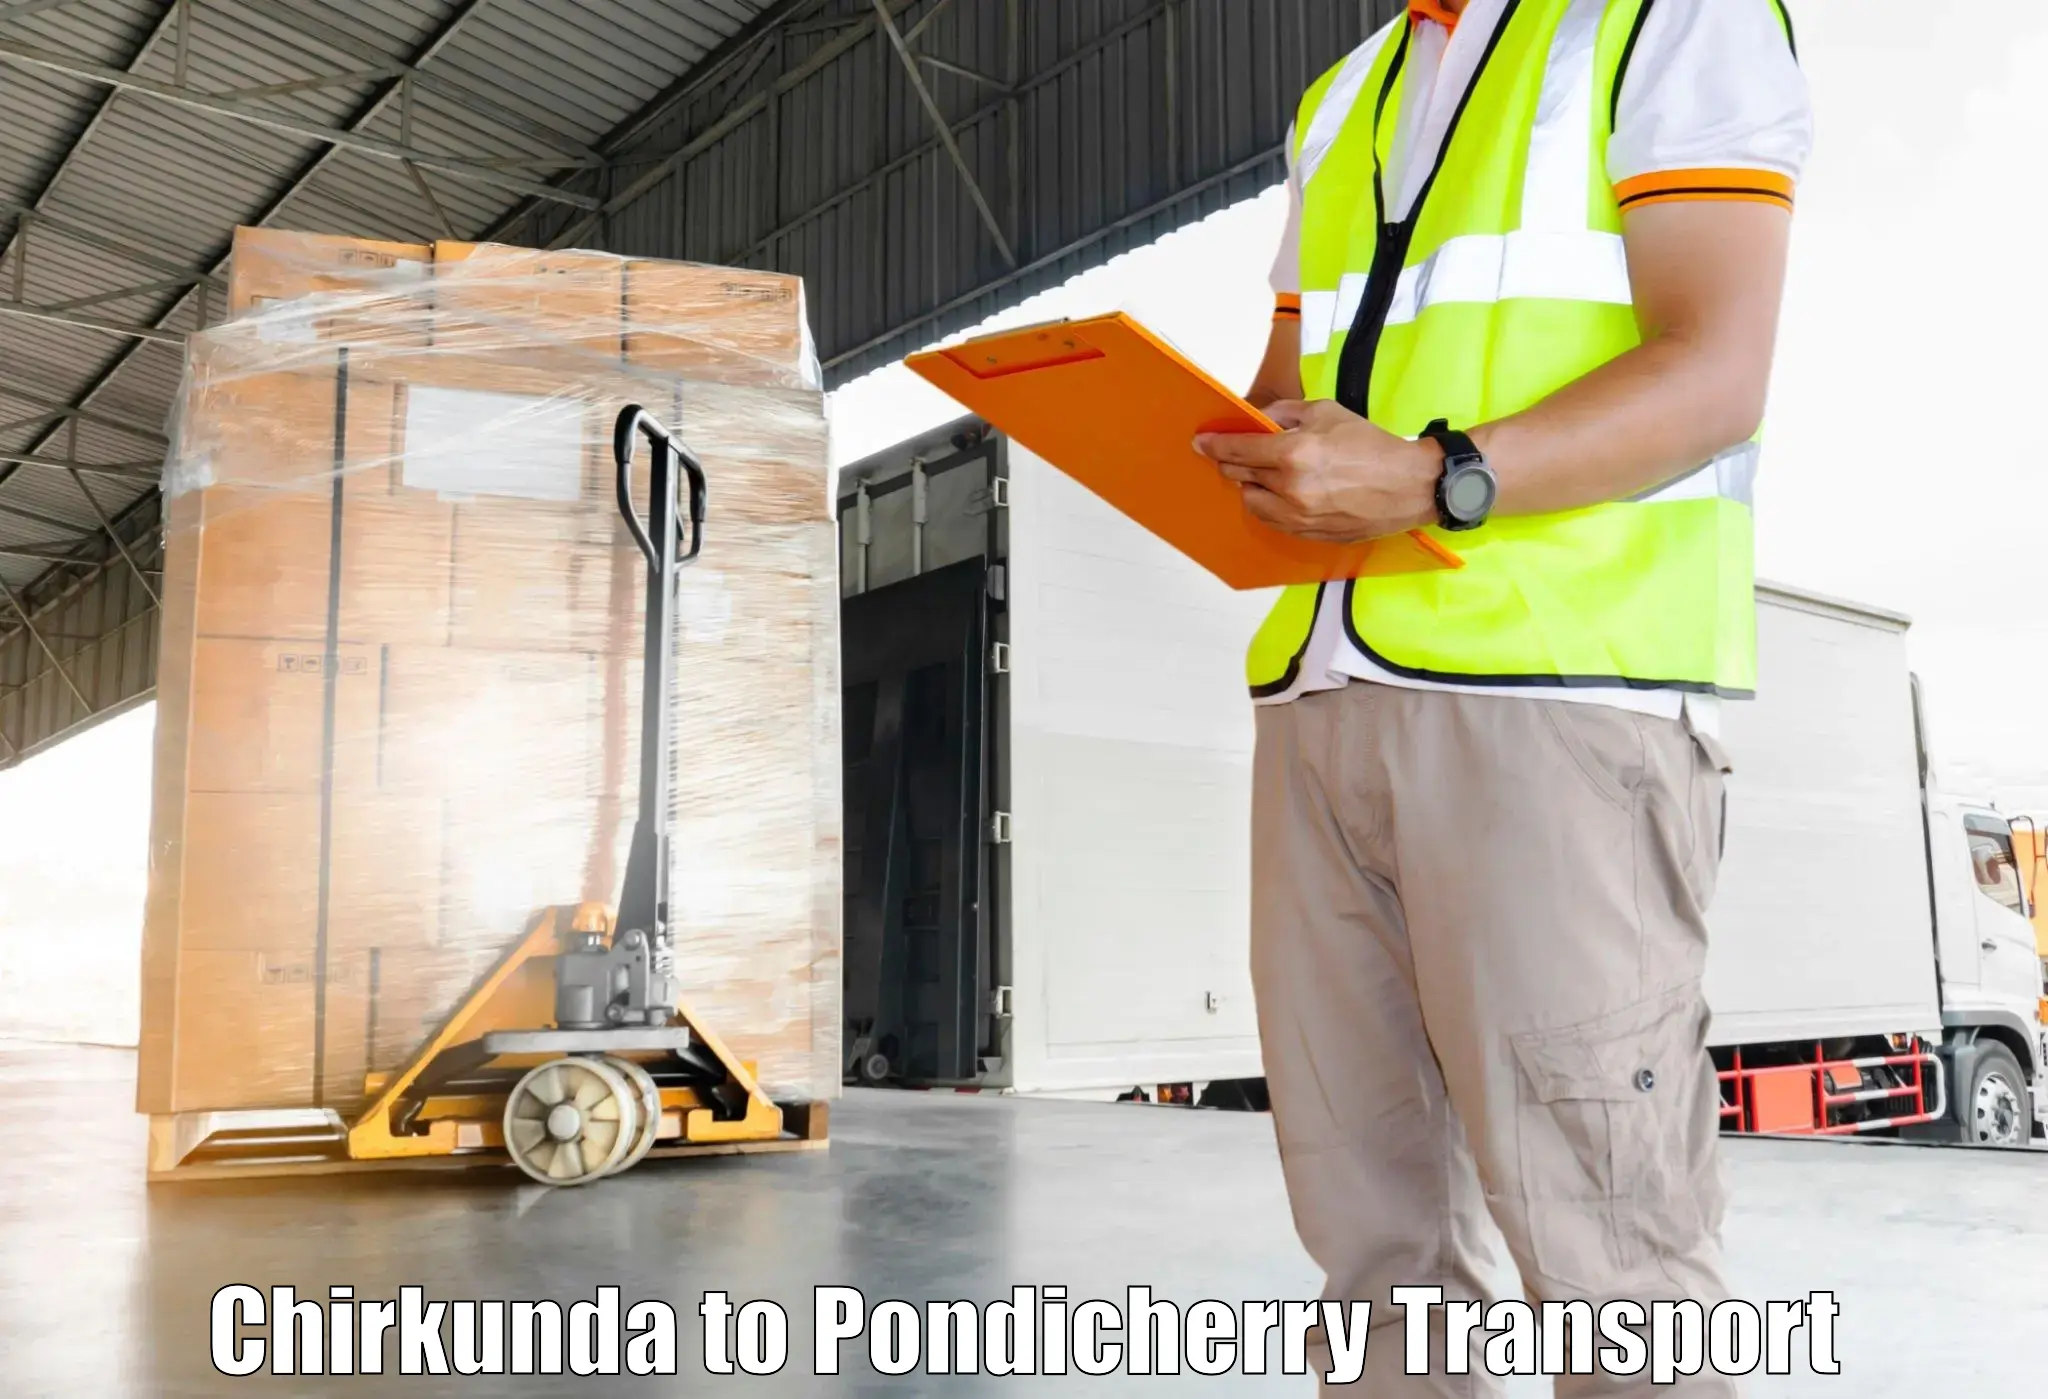 Commercial transport service Chirkunda to Pondicherry University